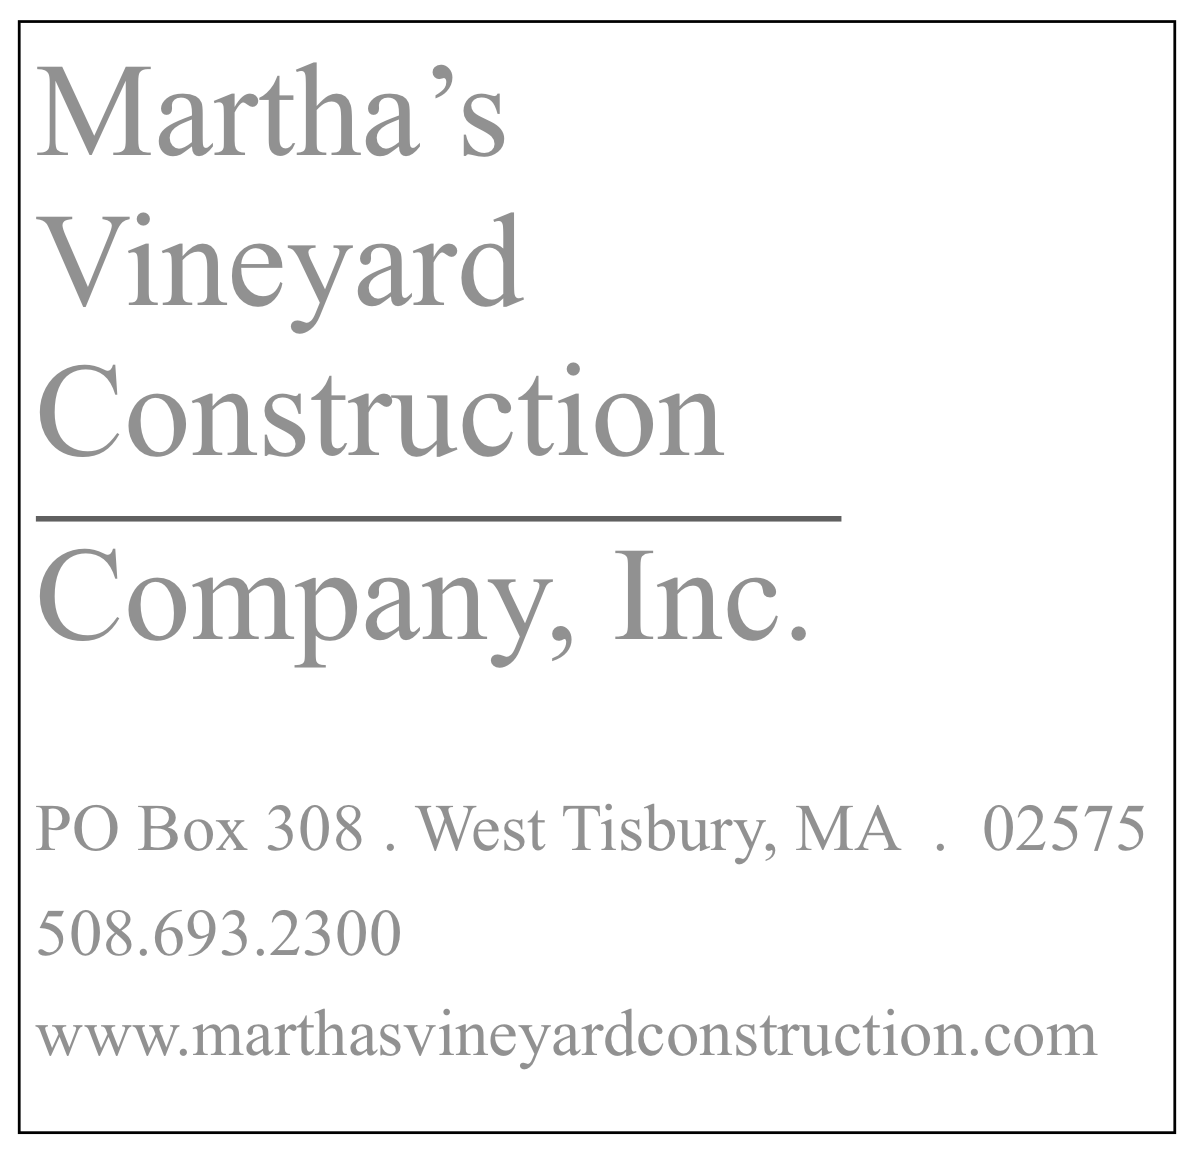 Martha's Vineyard Construction Company